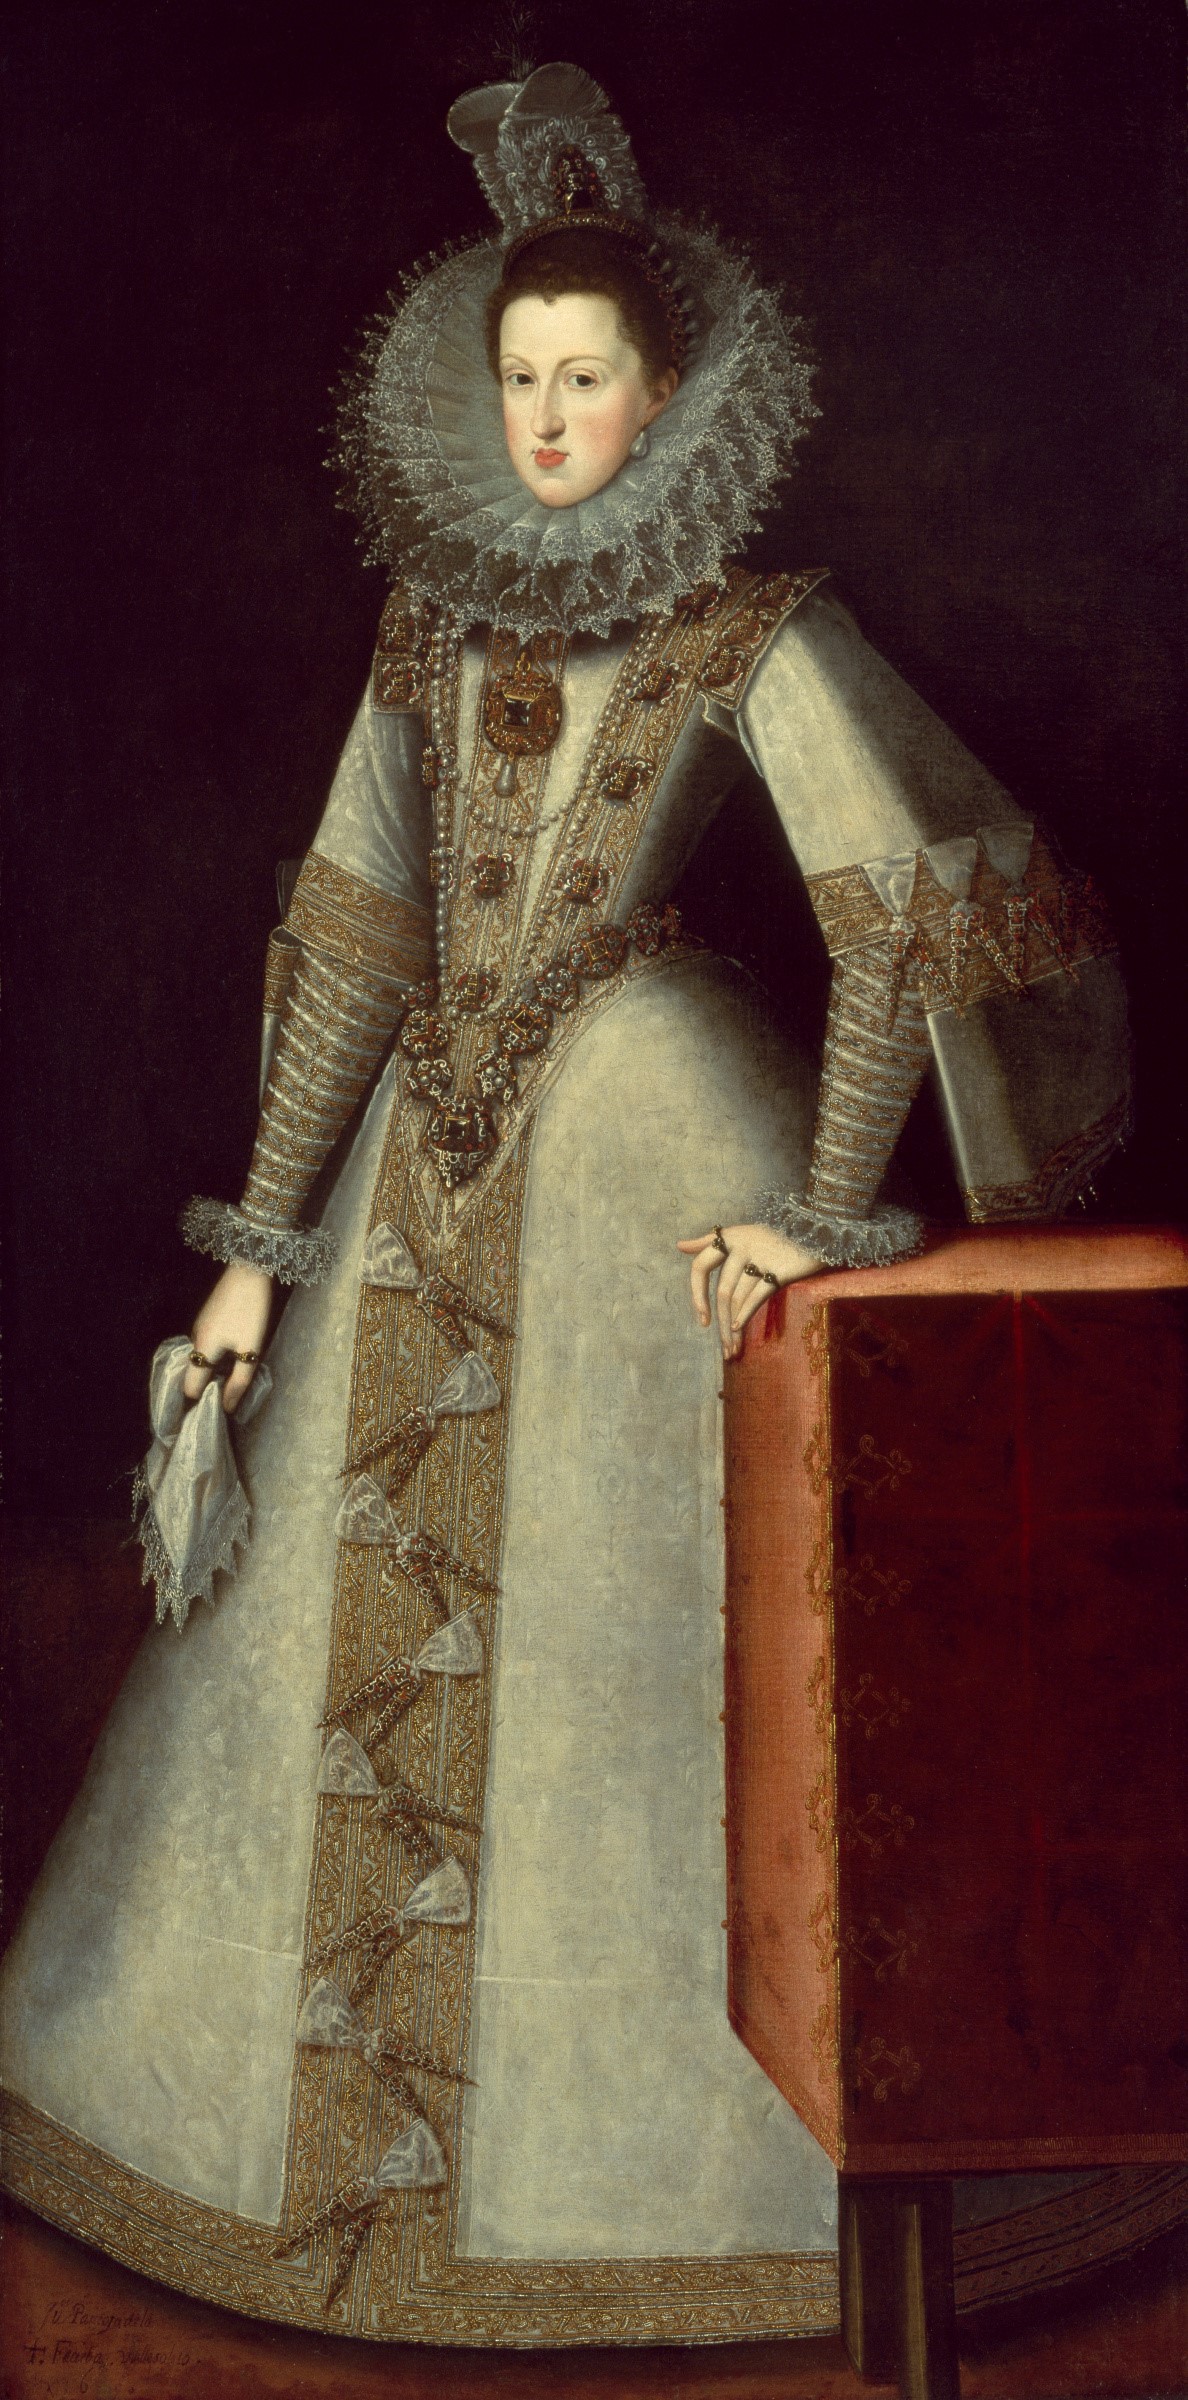 Juan Pantoja de la Cruz, Margaret of Austria, Queen of Spain, 1605